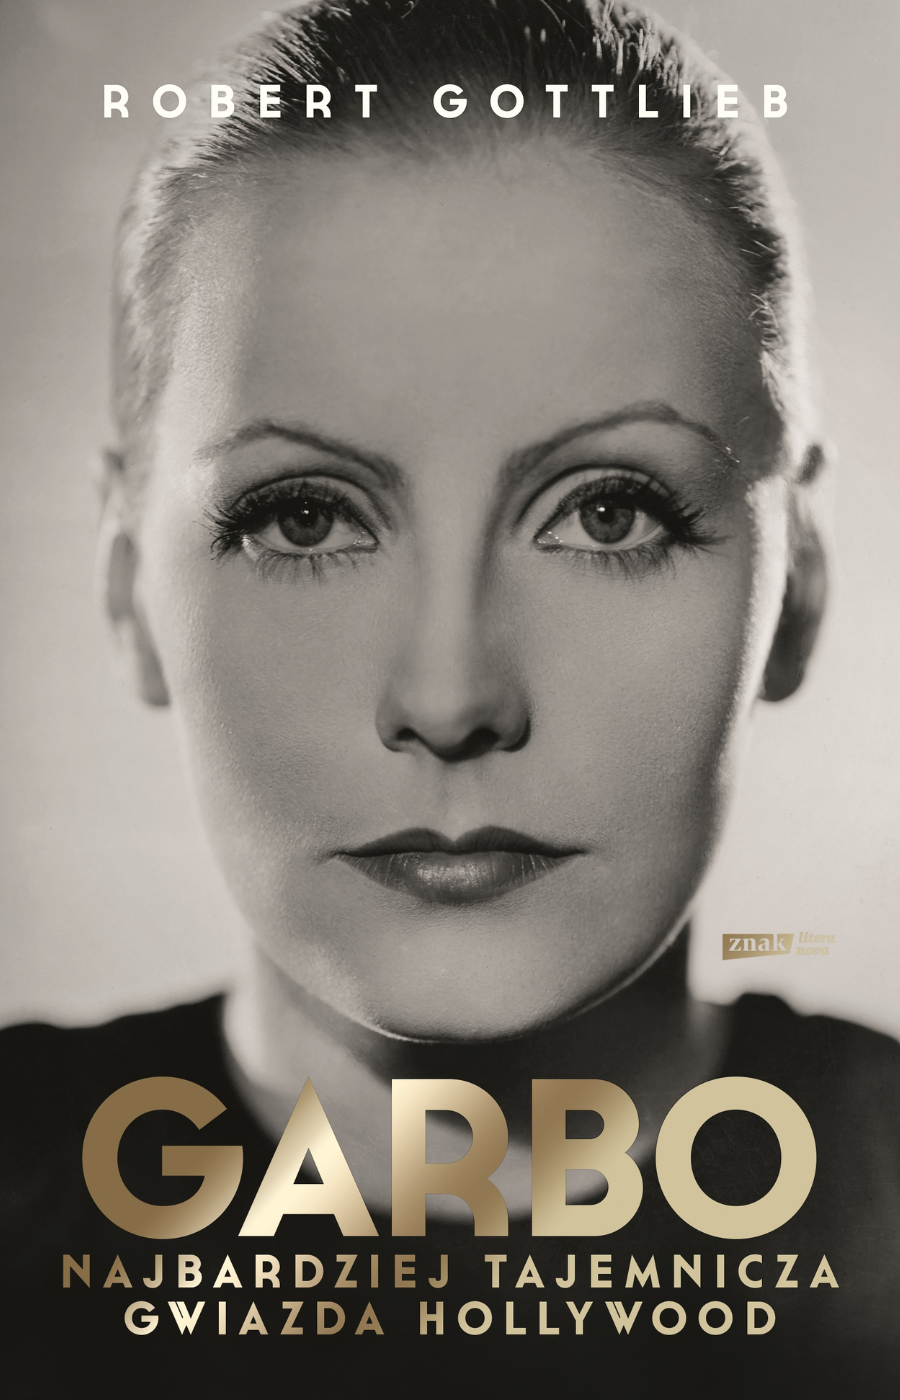 Polecamy książkę: „Garbo. Najbardziej tajemnicza gwiazda Hollywood”, Robert Gottlieb, wyd. Znak Literanova.